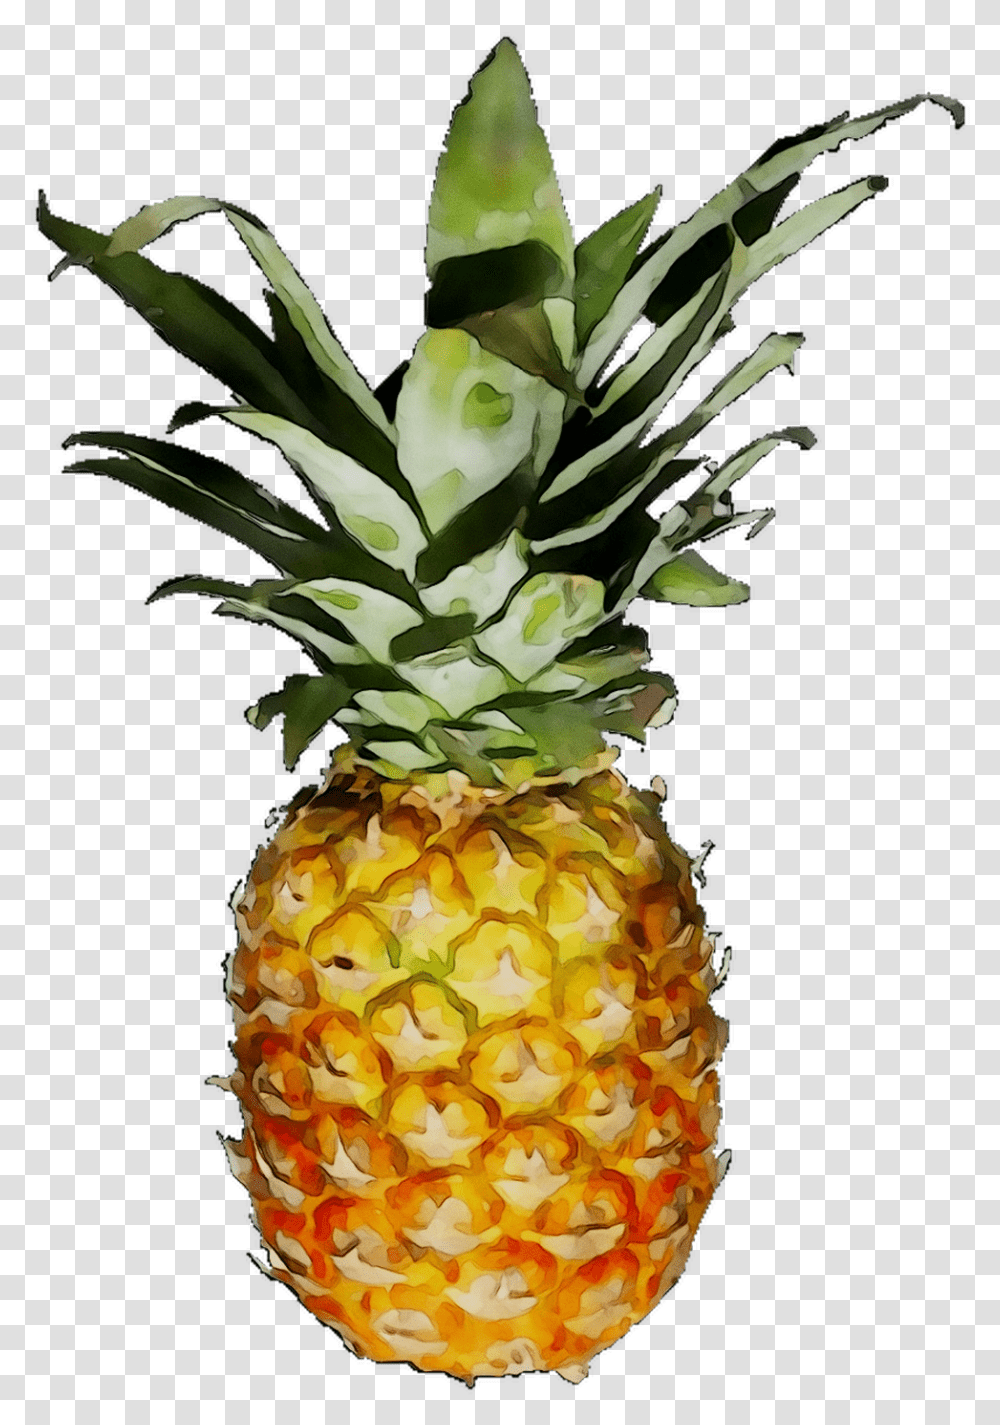 Download Pineapple Jpg Background, Plant, Fruit, Food Transparent Png